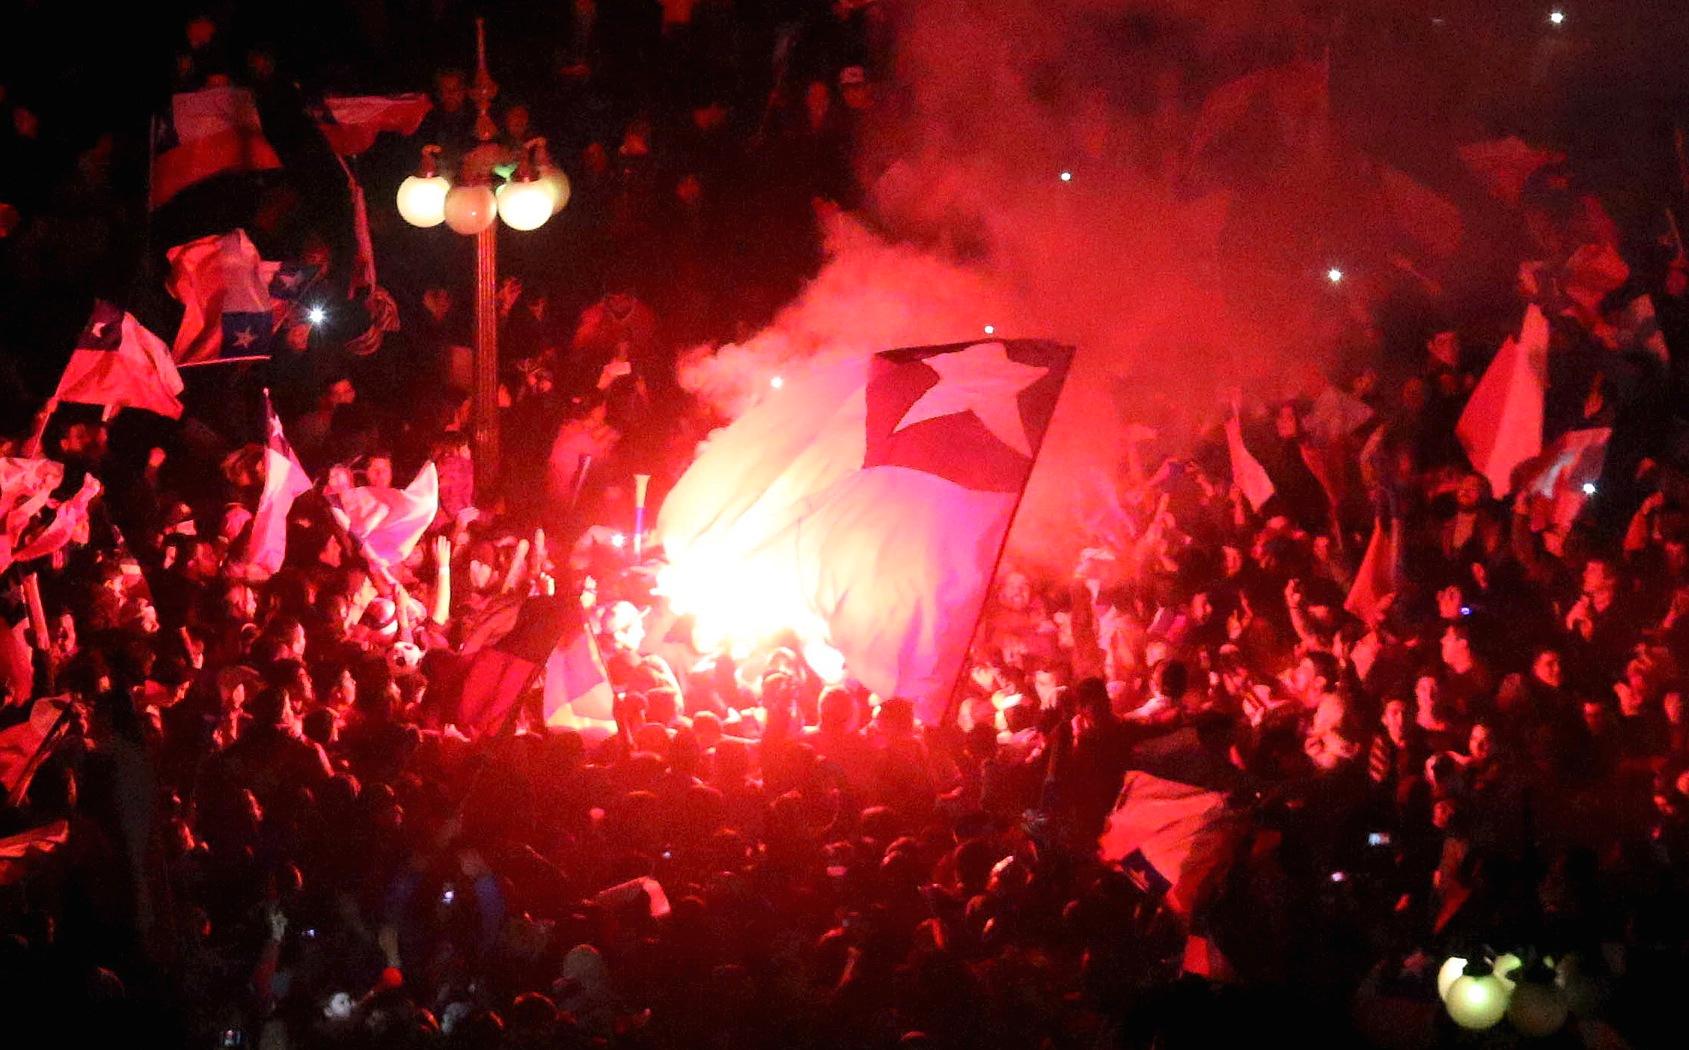 Chilenska fans firade vilt på gatorna i natt.